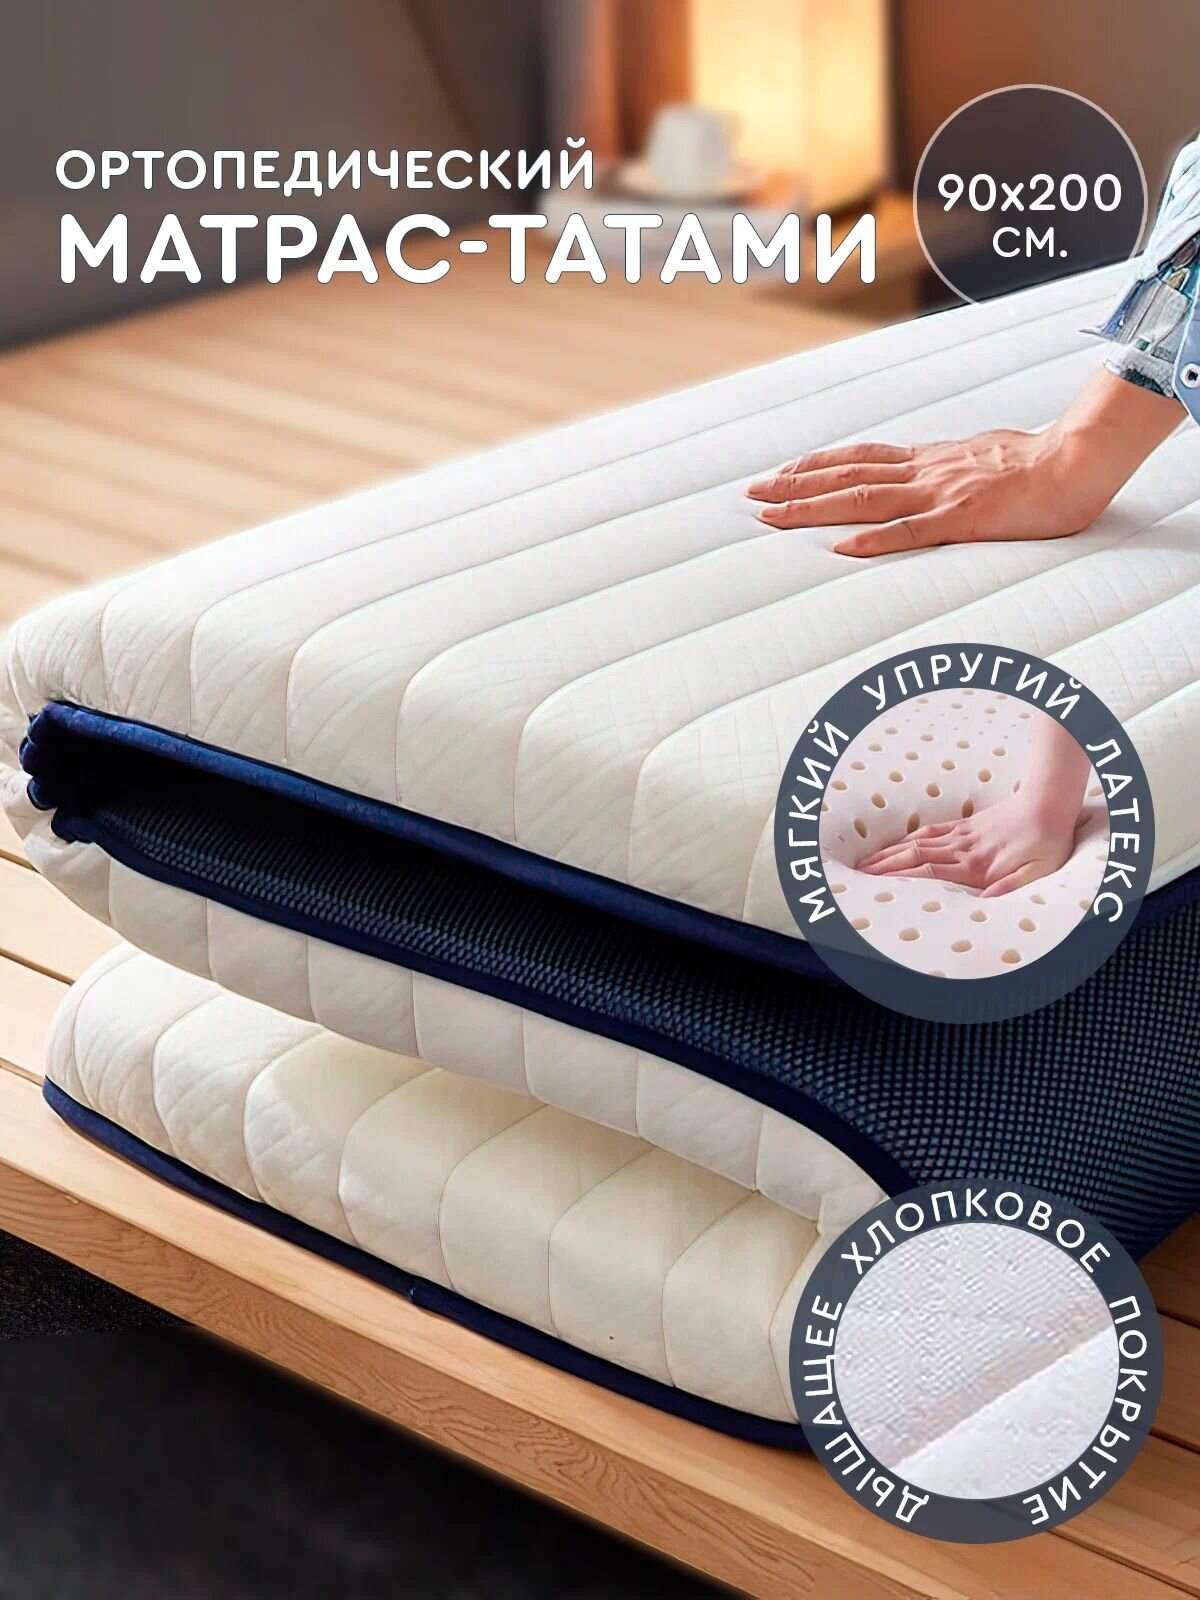 Матрас татами (белый, 90x200 см) Hans&Helma для сна односпальный